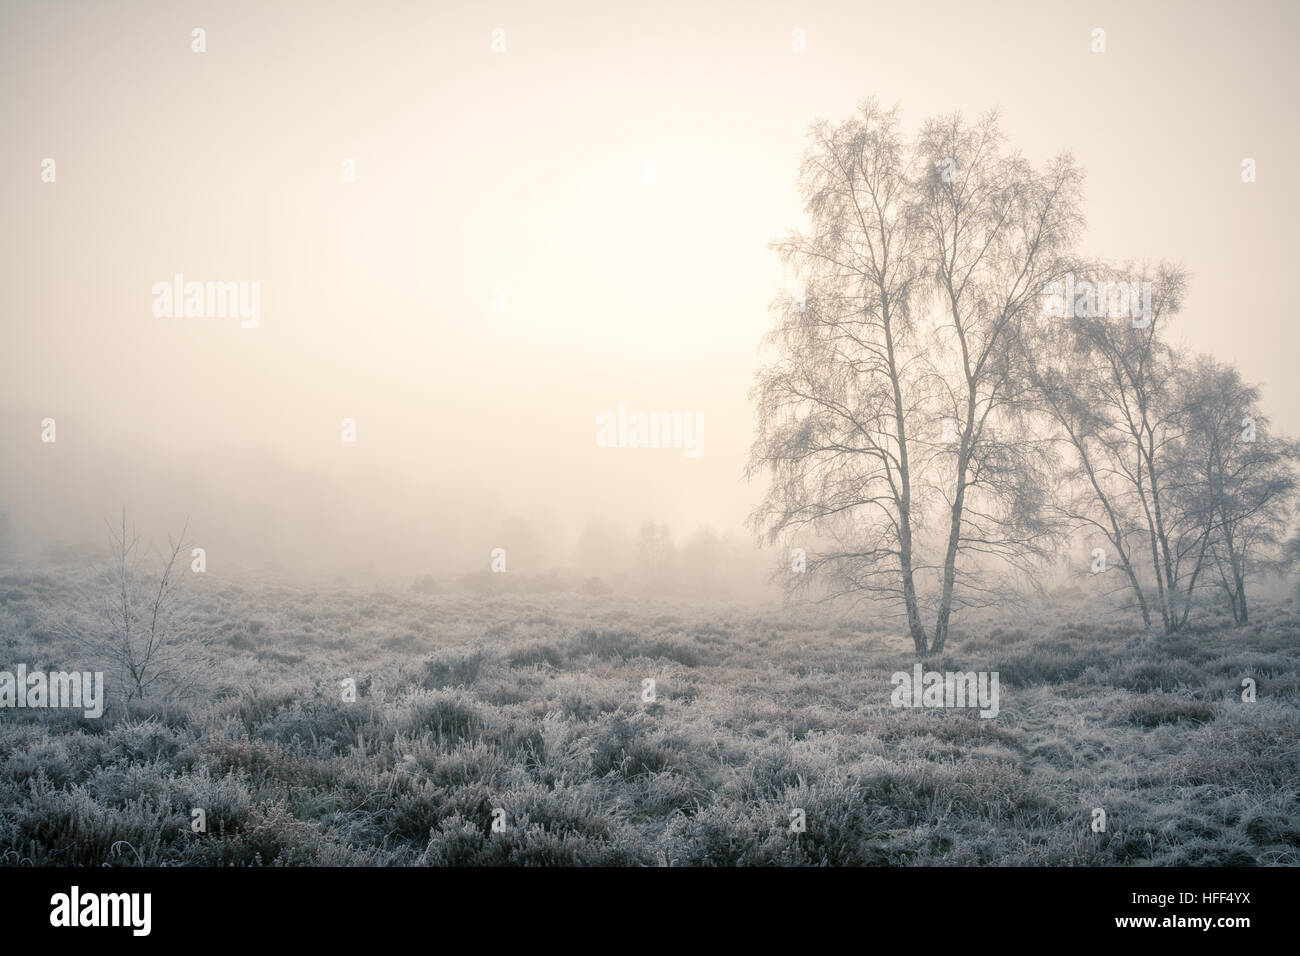 Paesaggio invernale di brughiera e alberi in nebbia gelida. Frensham comune nella zona di Surrey Hills di eccezionale bellezza naturale, Regno Unito Foto Stock